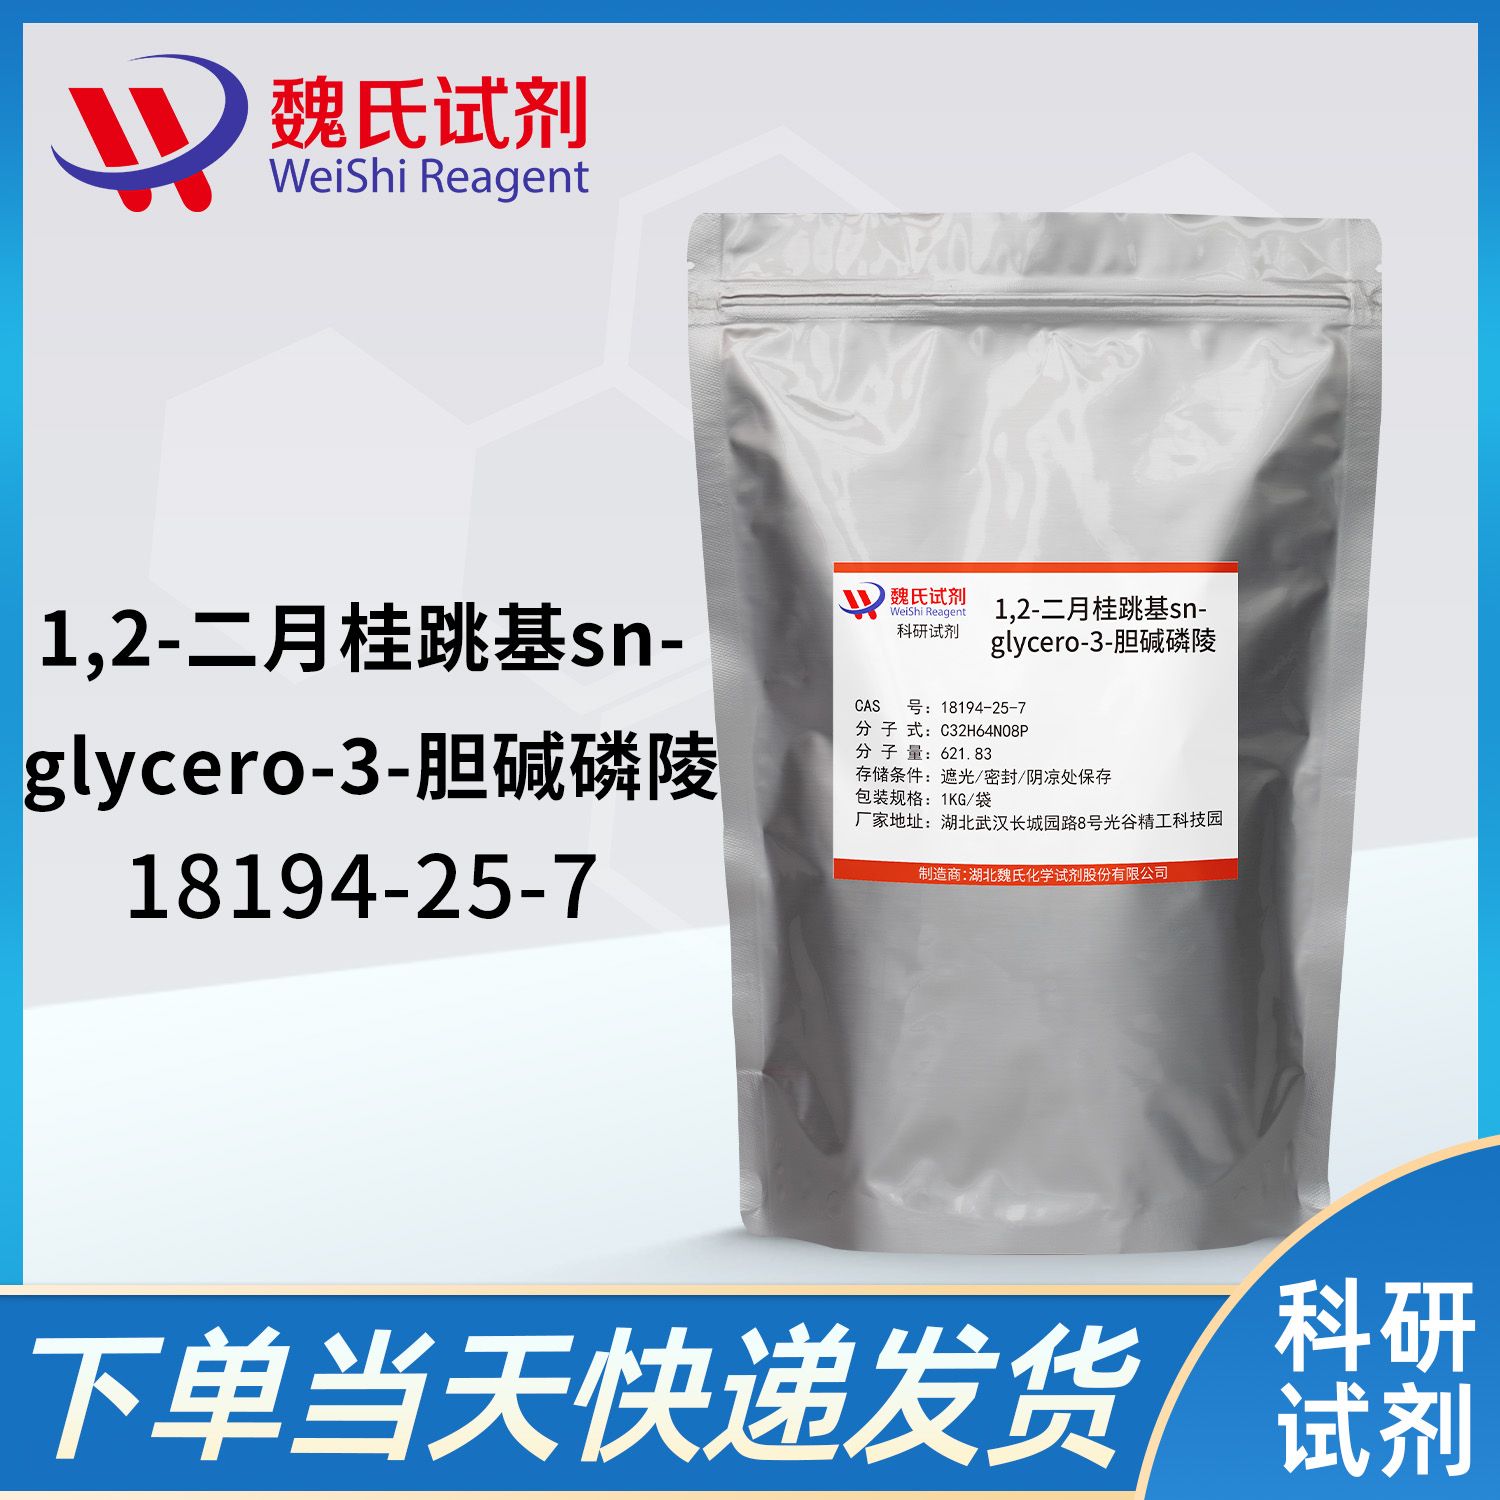 1,2-二十二酰基-sn-glycero-3-胆碱磷酸(DLPC)